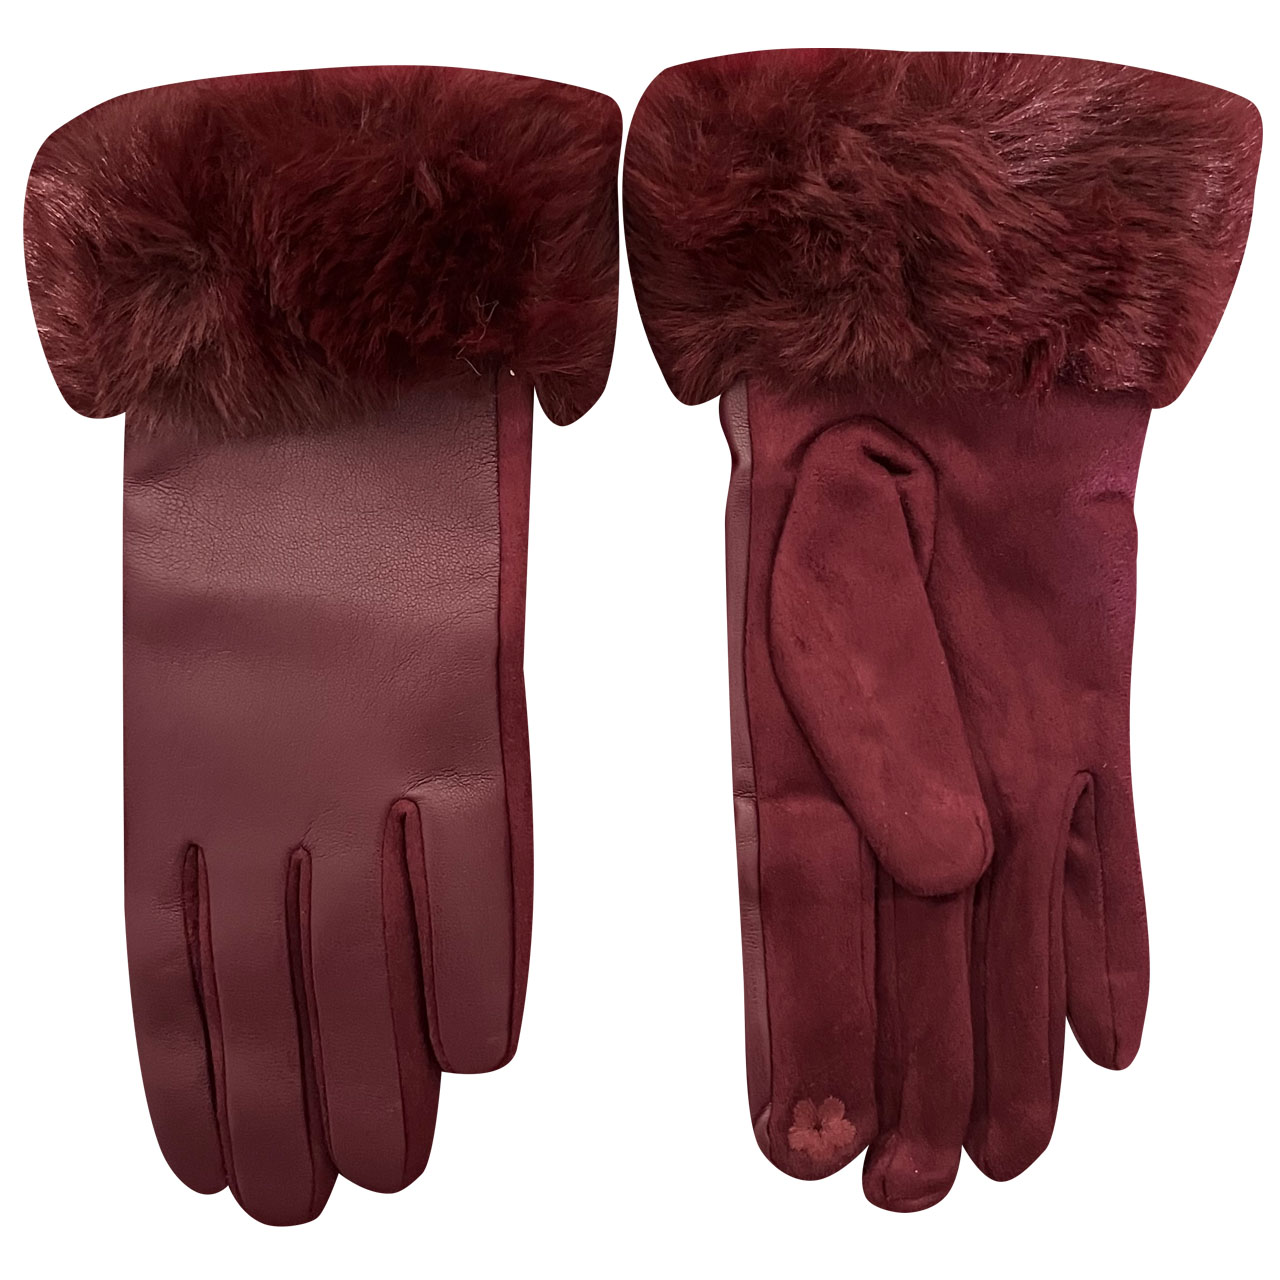  دستکش زنانه مدل زمستانی کد 95